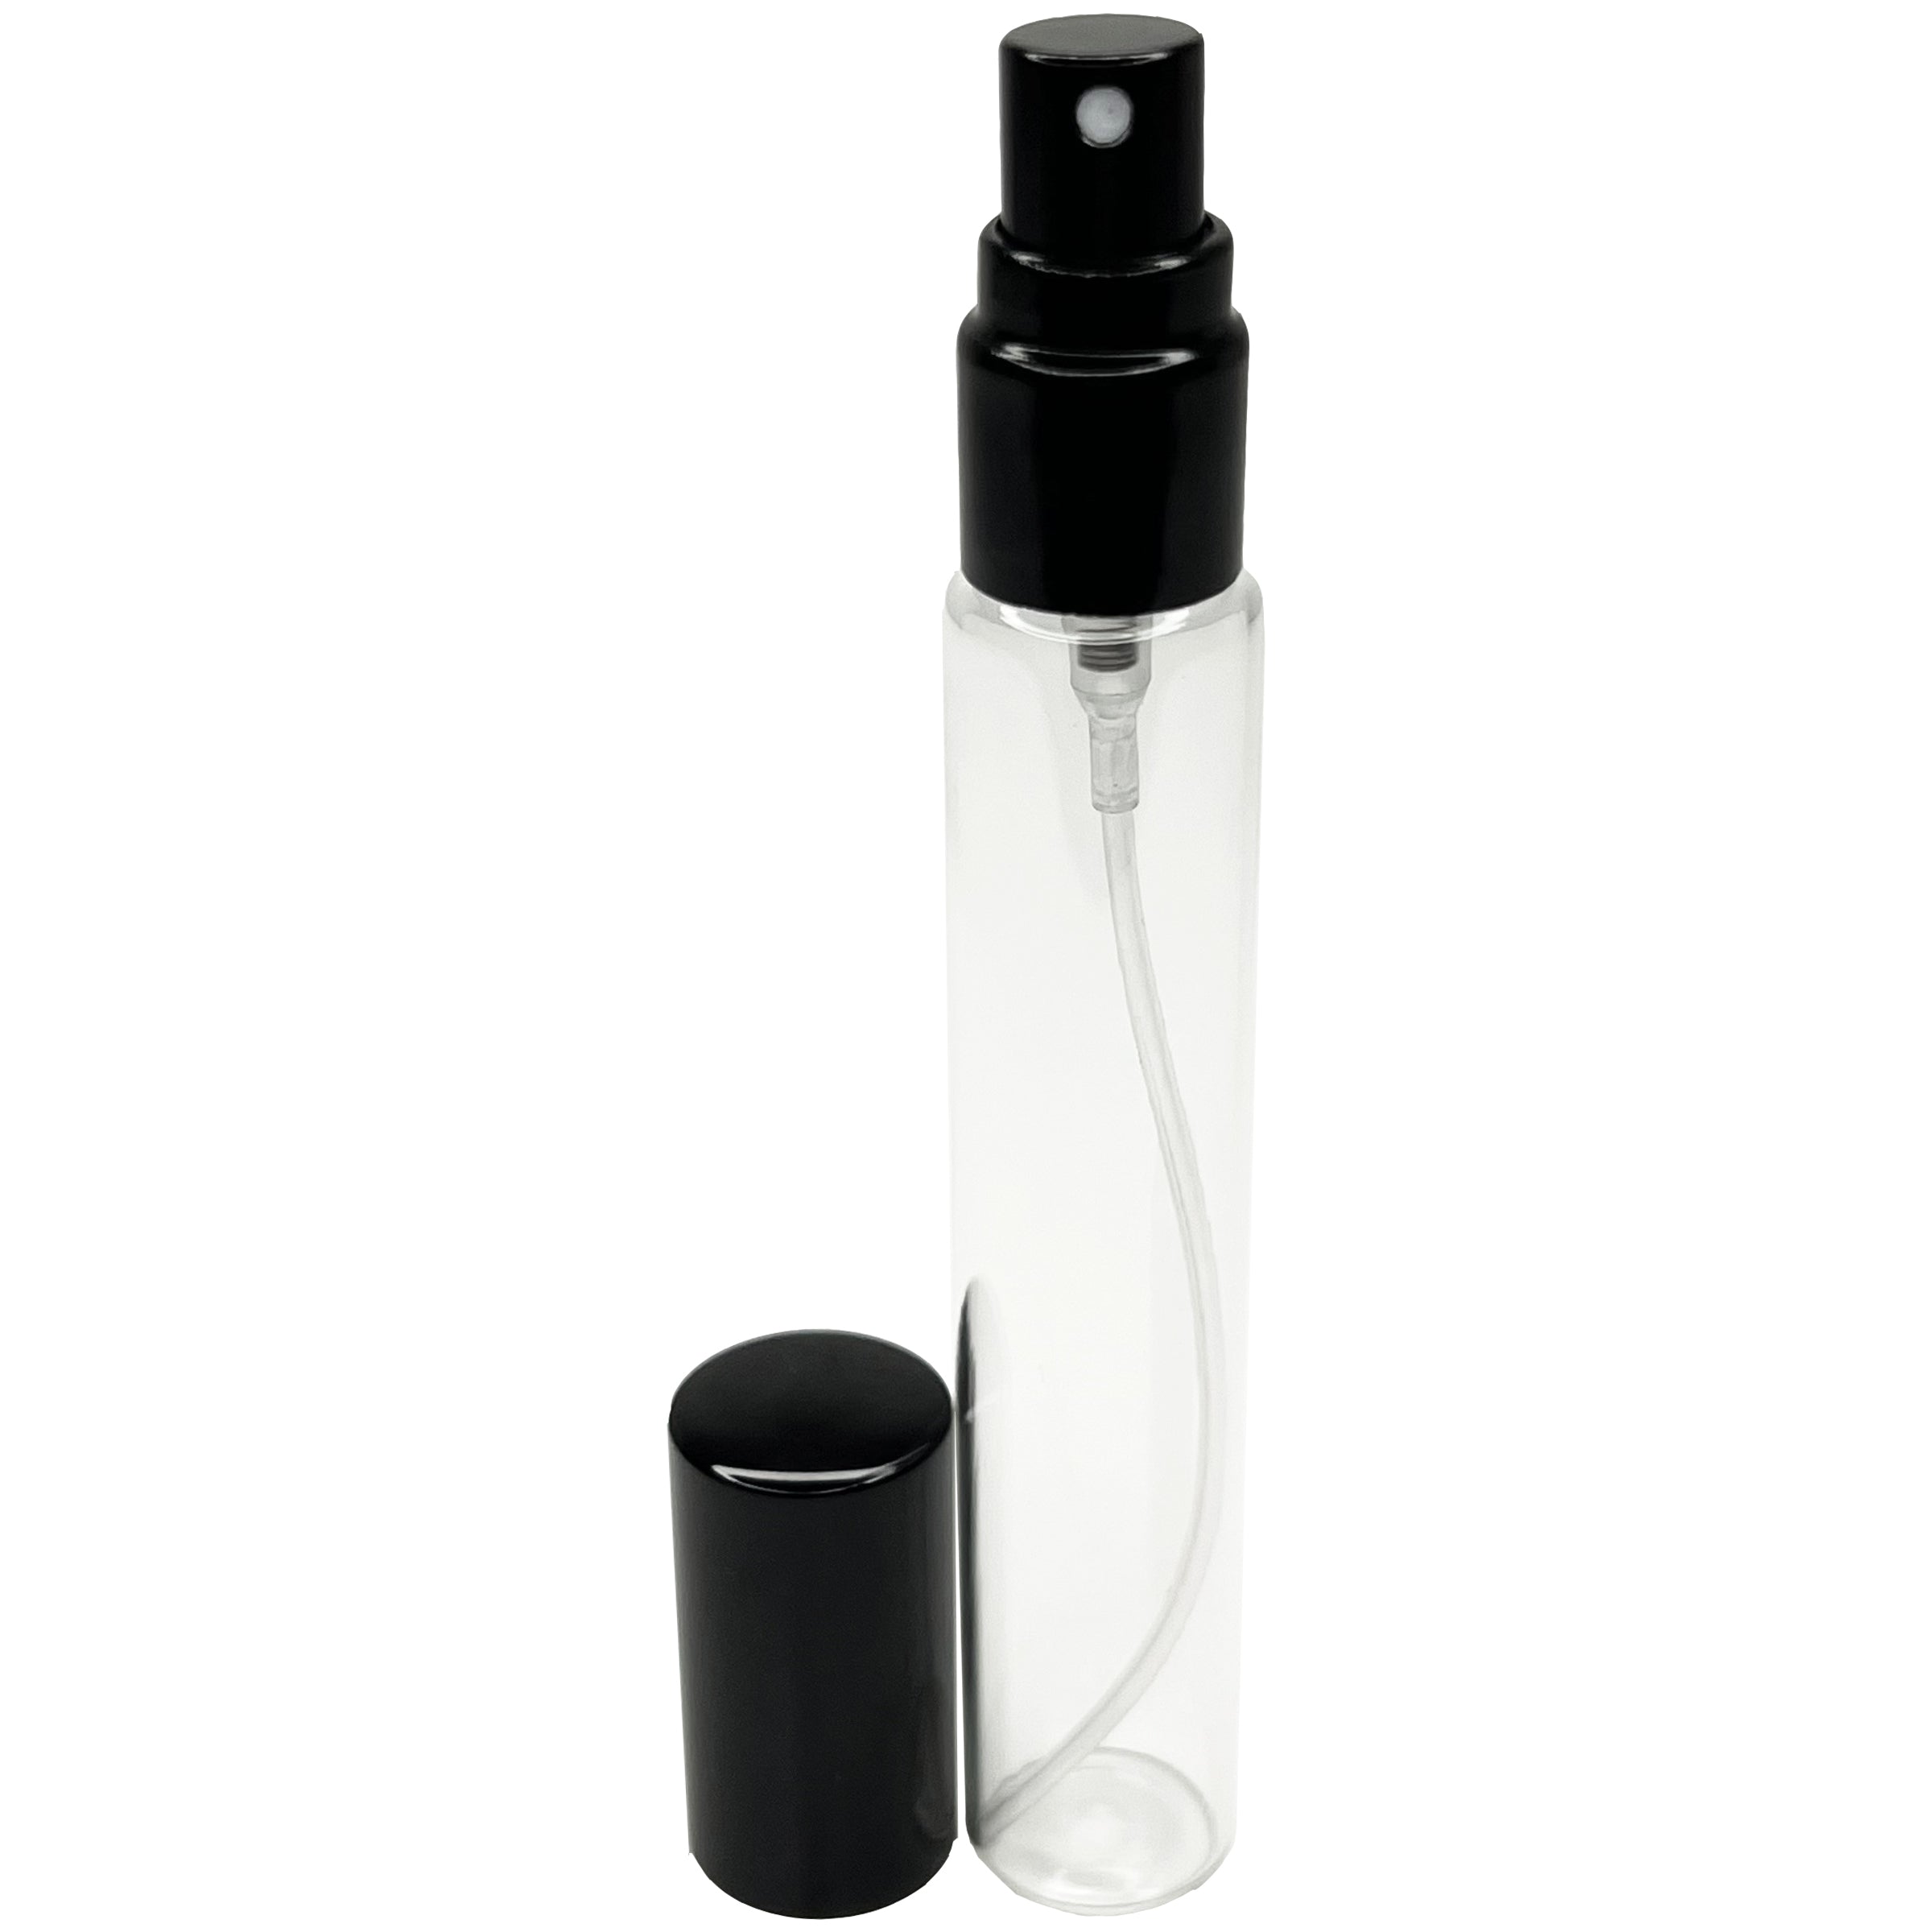 15ml 0.5oz glass spray bottles aluminum pumps lids